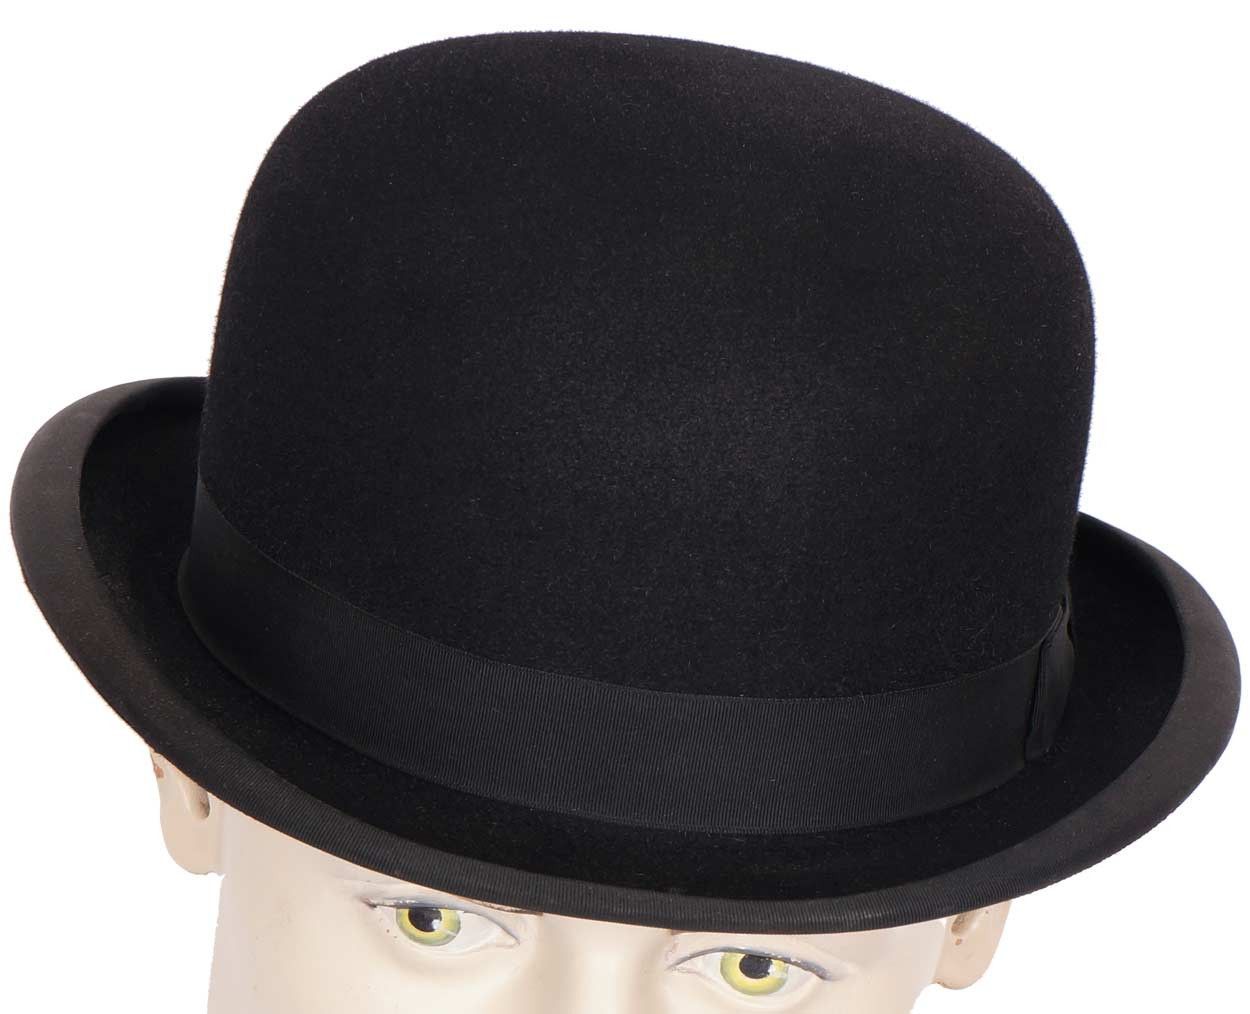 Bowler hat. Котелок шляпа 19 век. Боулер дерби шляпа. Шляпа котелок мужская 19 века. Мужские английские котелки шляпы 19 века.